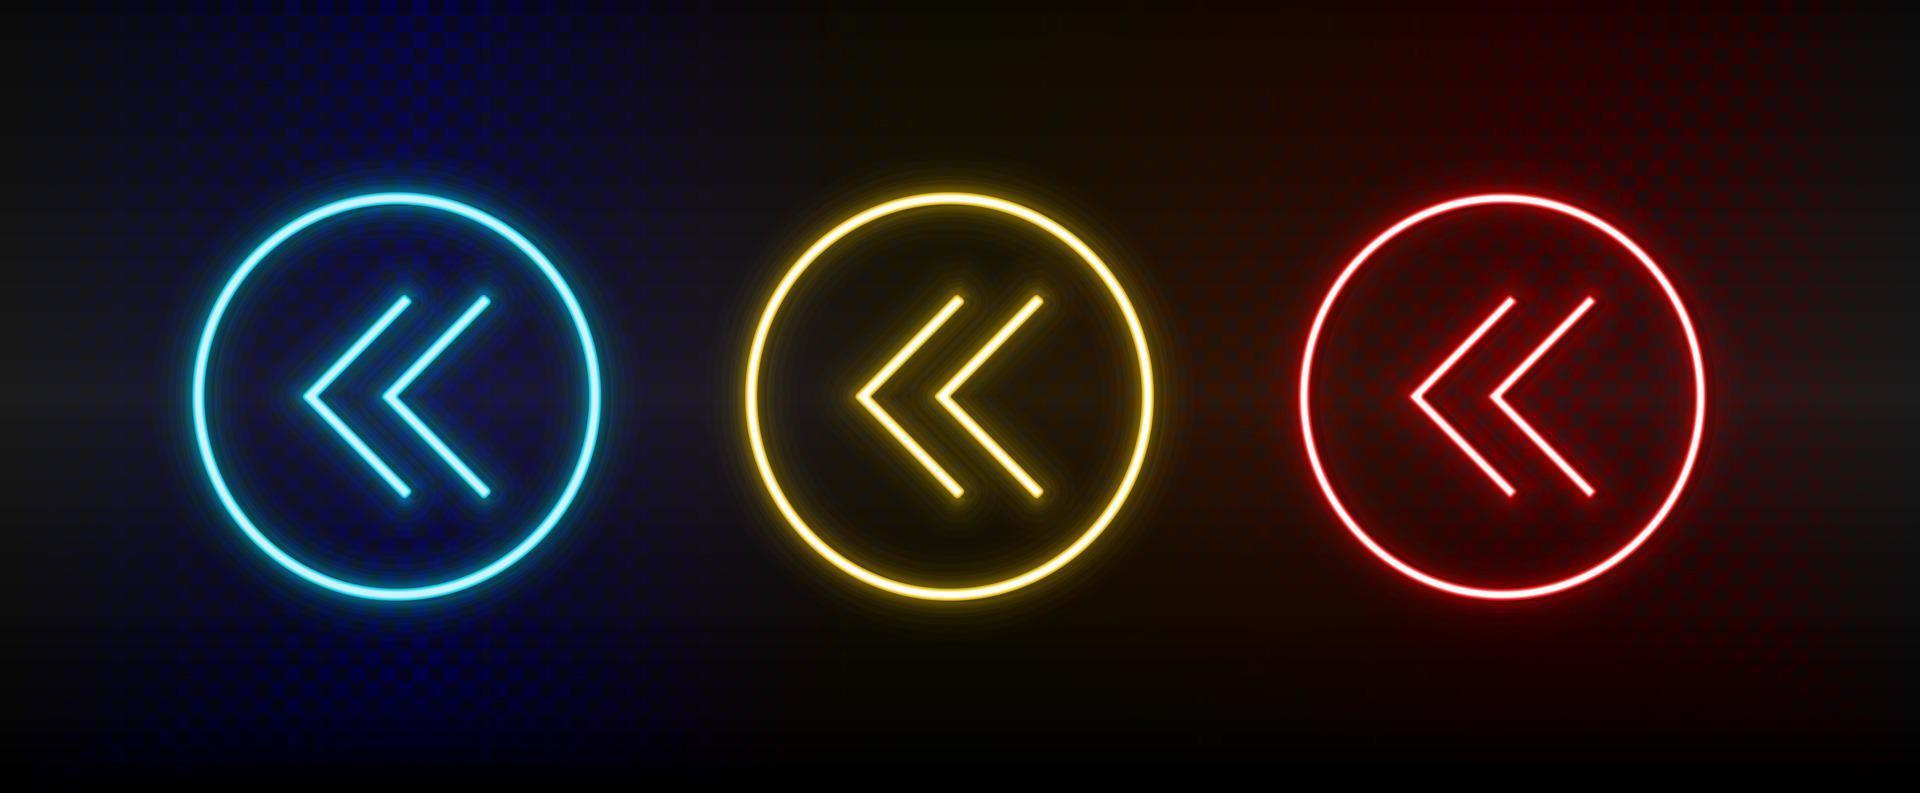 Neon-Symbole. ui-Pfeil. Satz von roten, blauen, gelben Neonvektorsymbolen auf dunklem Hintergrund vektor